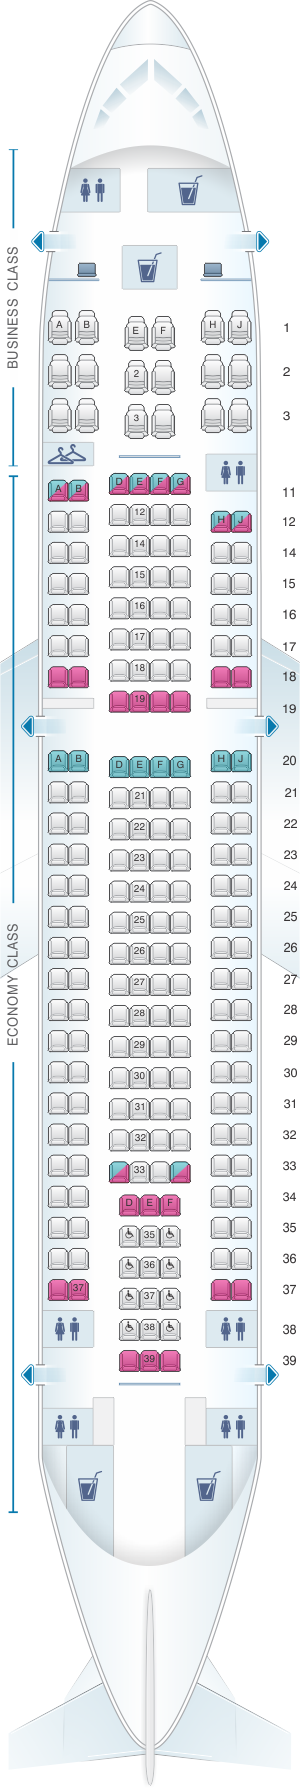 Seat Map Sata Air Acores Airbus A310 300 Config 3 Seatmaestro